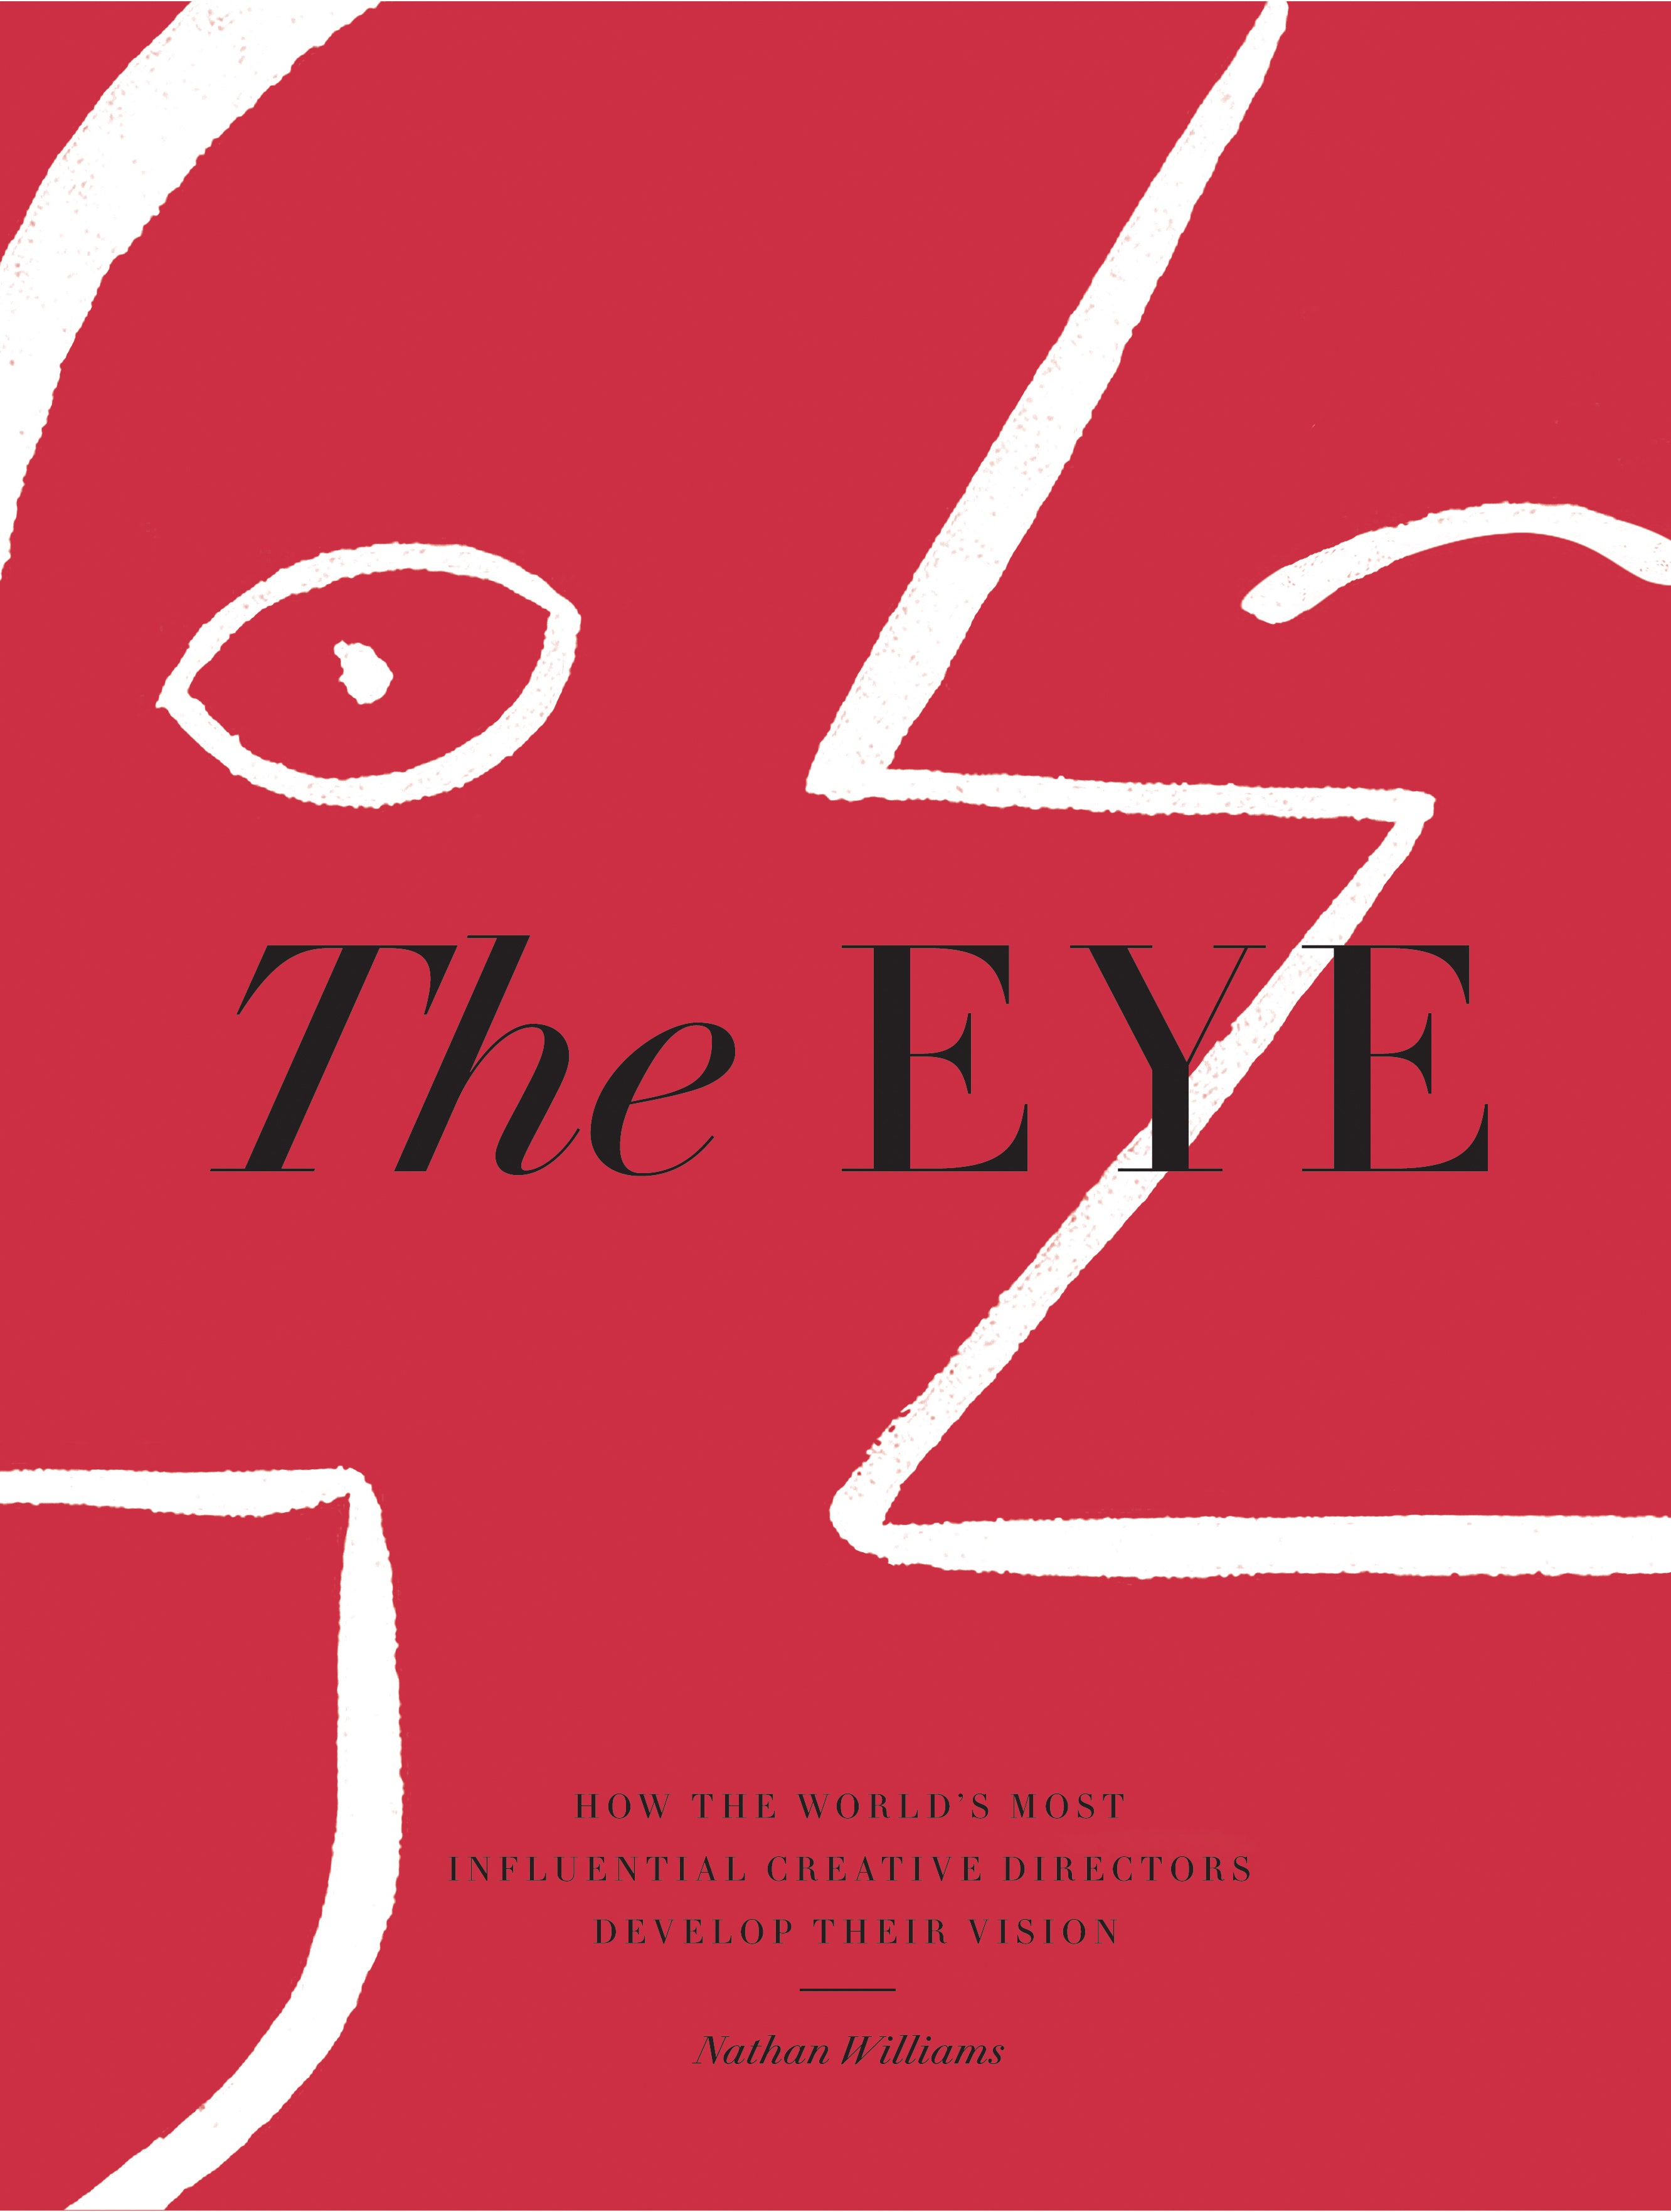 The Eye - Nathan Williams